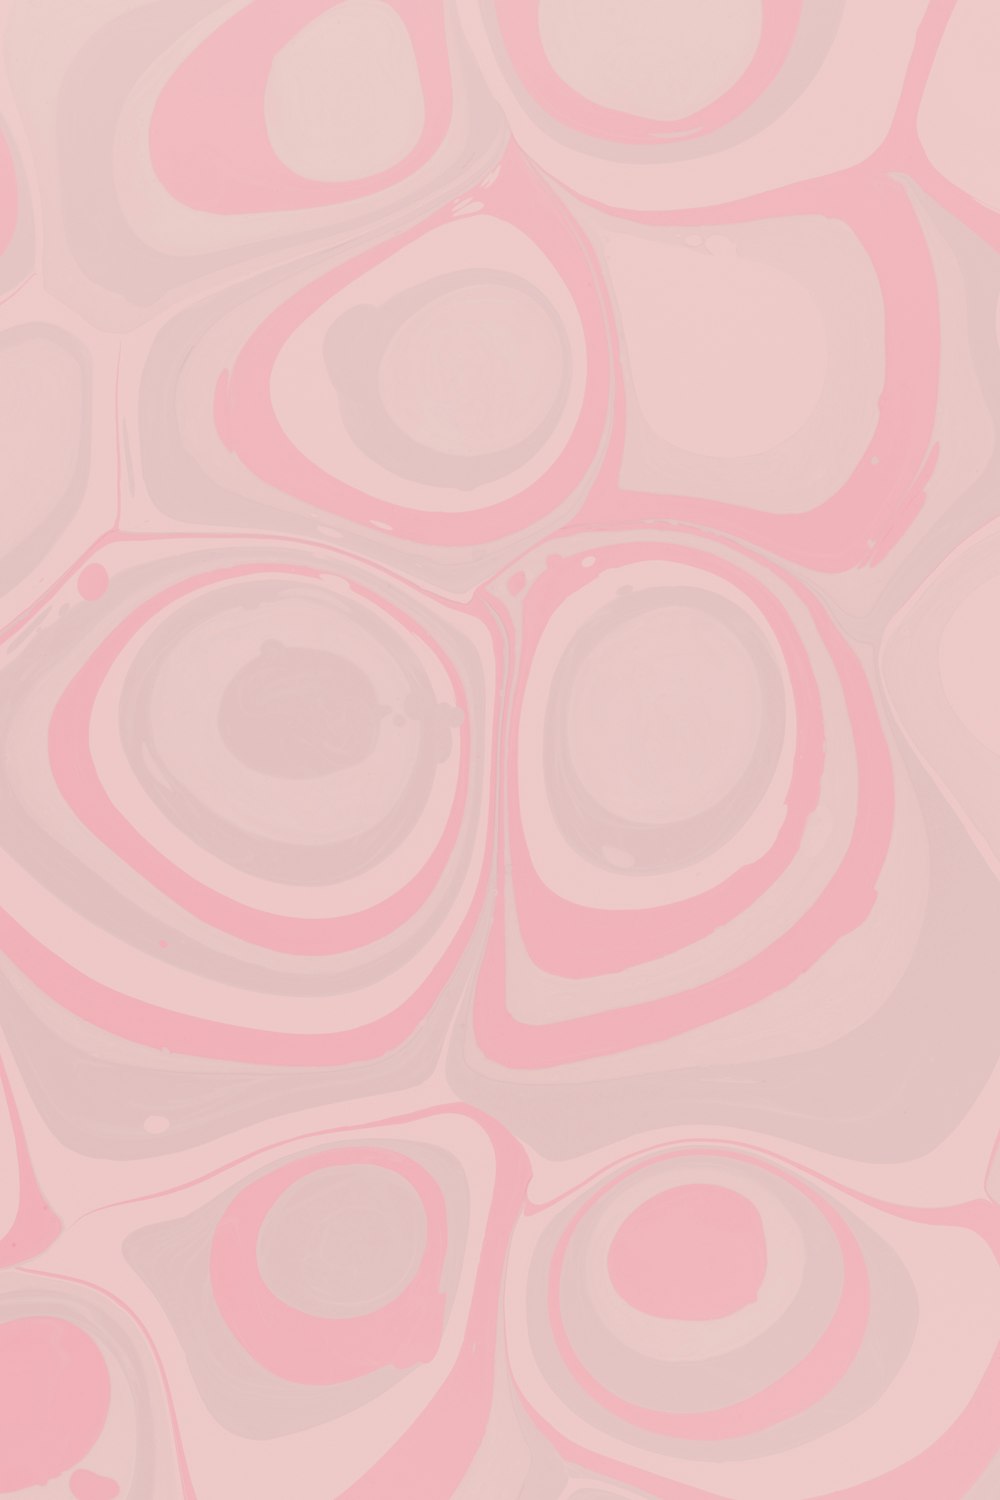 Illustration de coeur rose et blanc